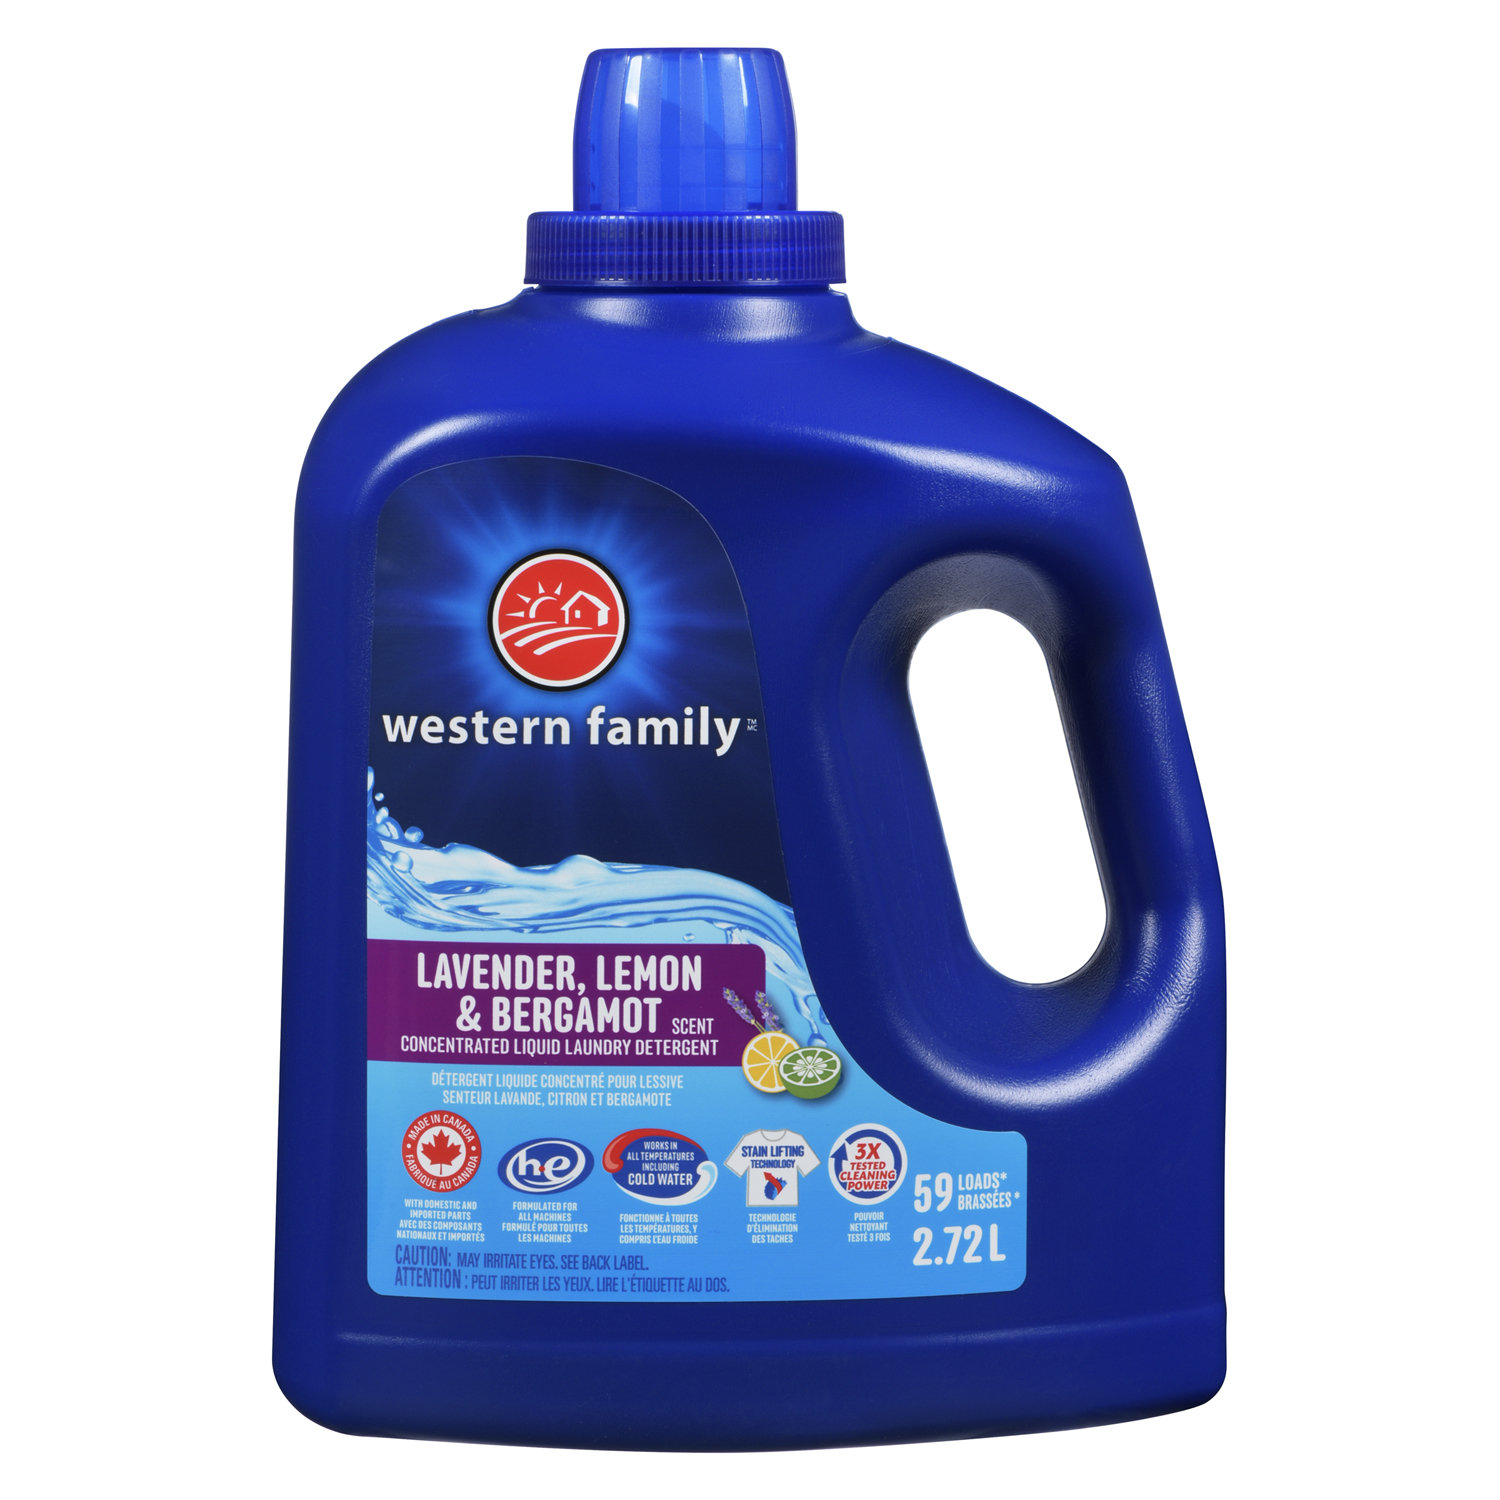 Woolite - liquid detergent 3L - 50 washes - All textiles